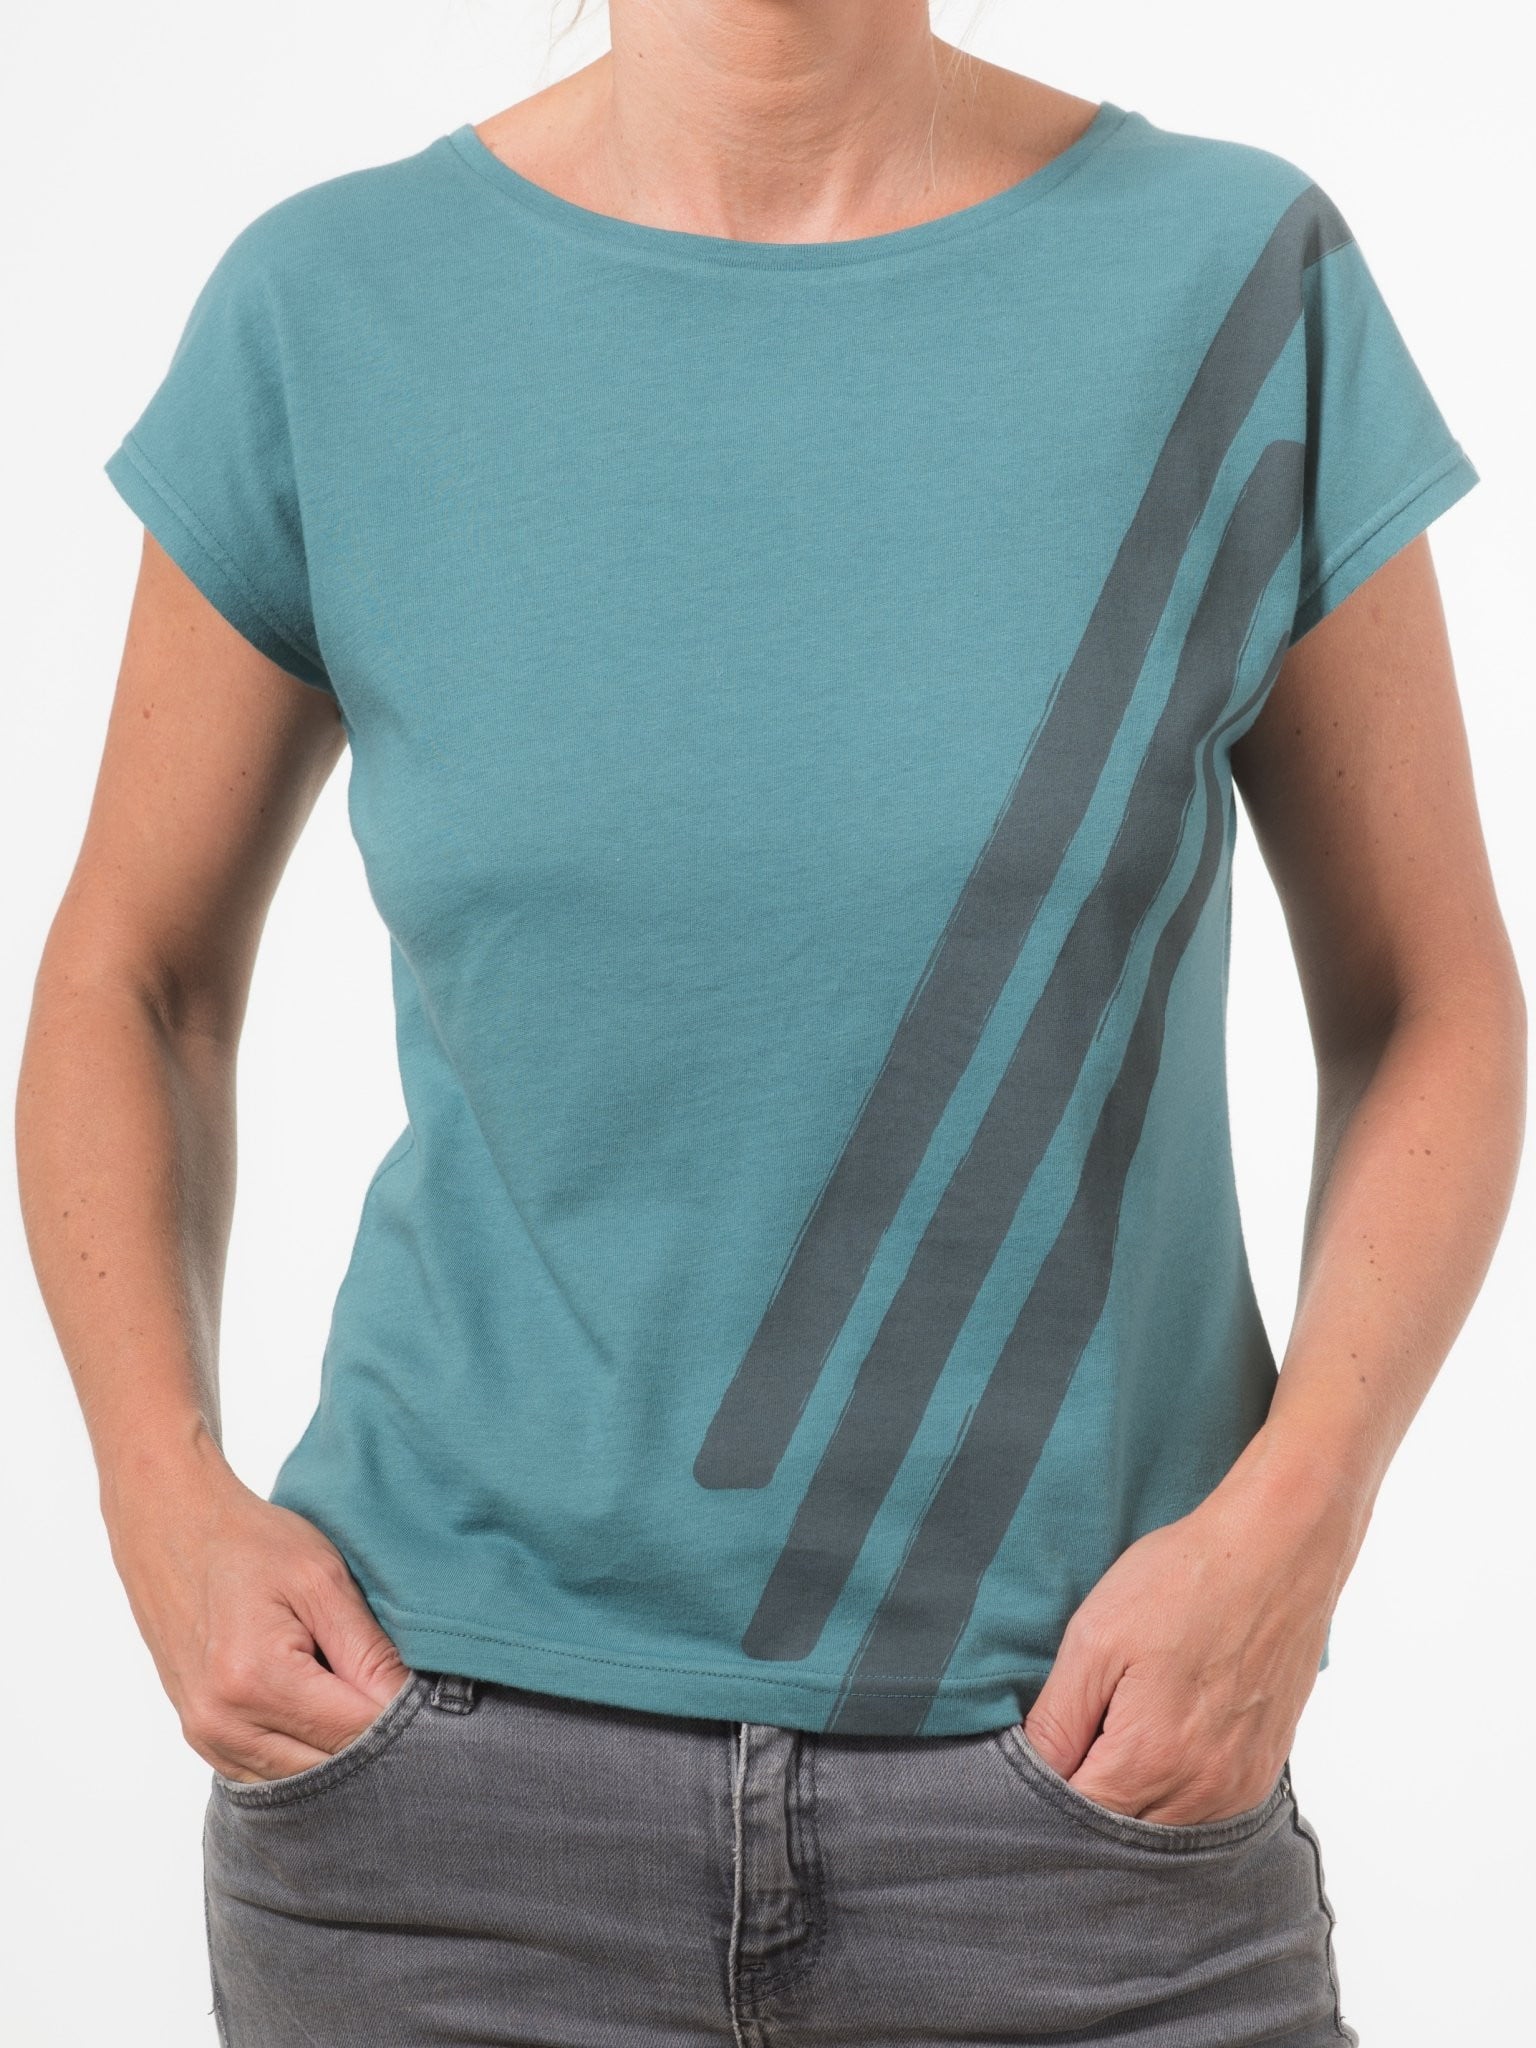 T shirt coton bio eco responsable femme col rond evase manche courte forme ajustee vert bleu print graphique suny